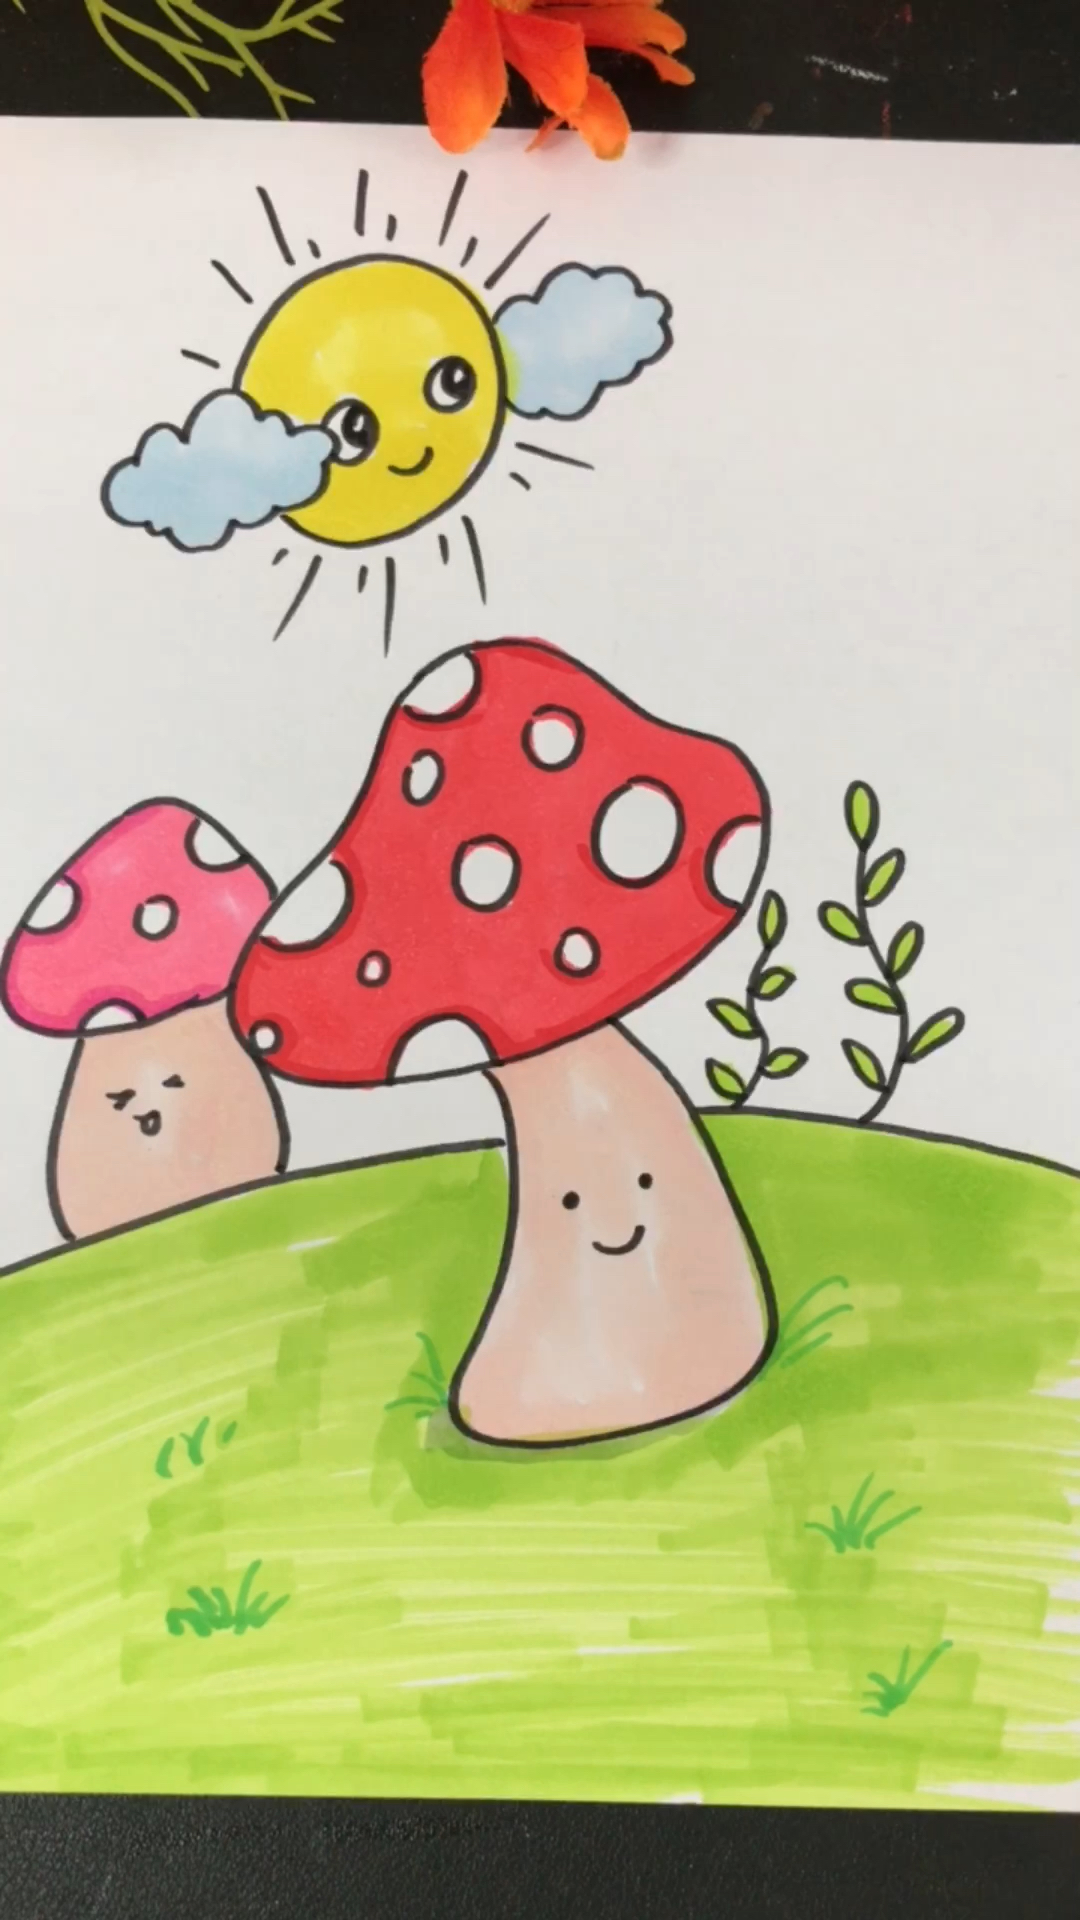 蘑菇简笔画,快收藏起来给孩子一起画